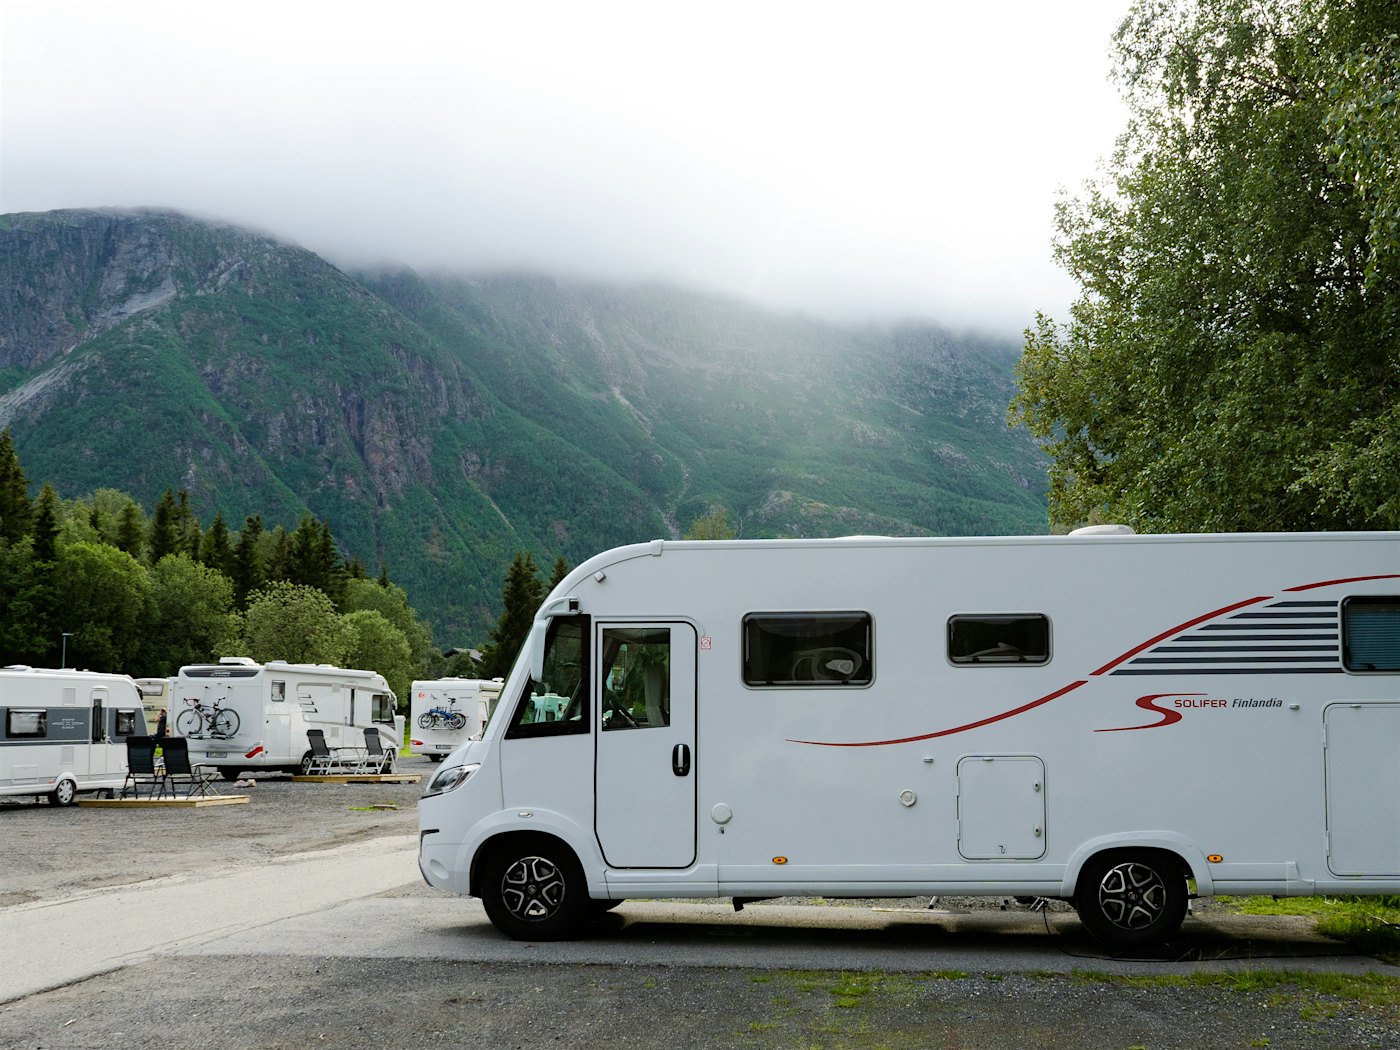 Bobiler og campingvogner står på campingplass, med høye fjell i bakgrunnen. Foto